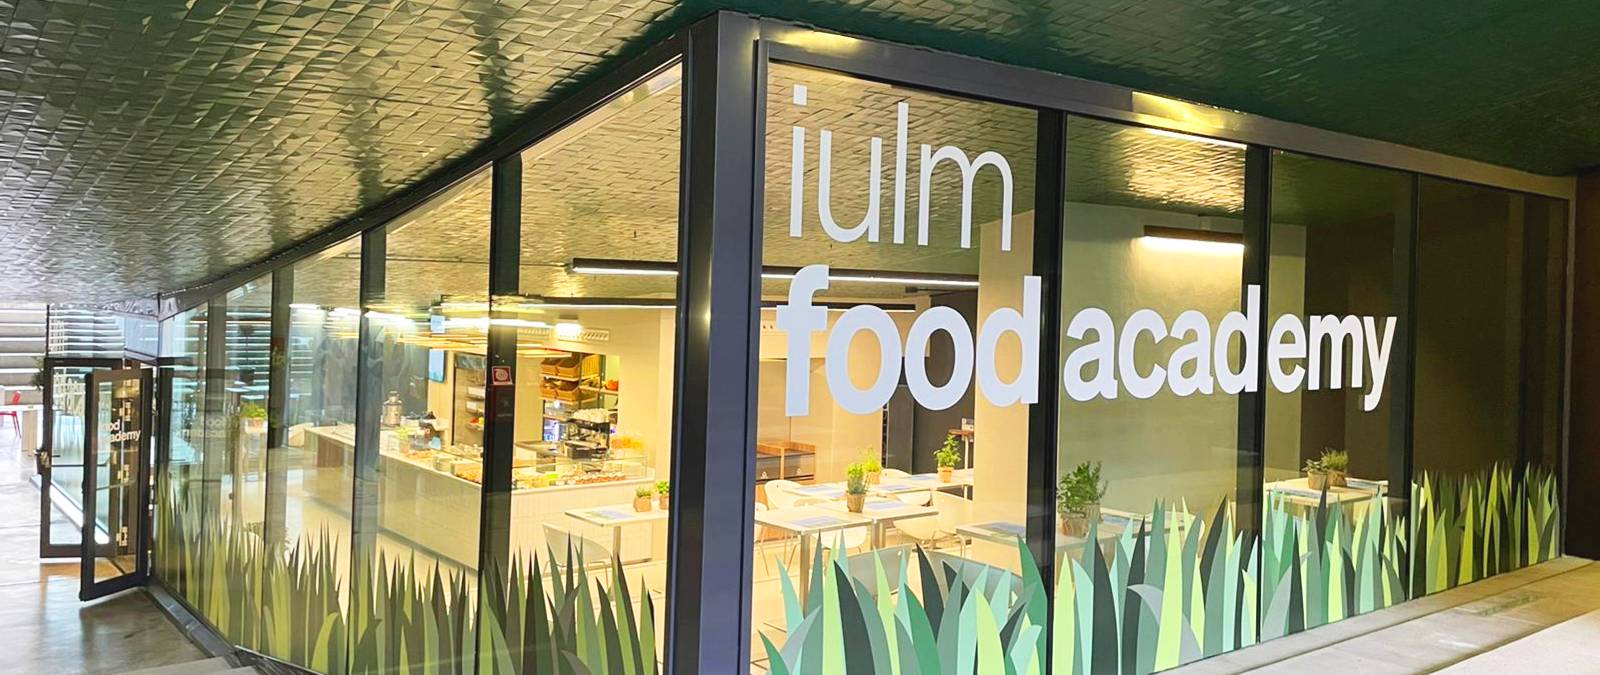 IULM Food Academy riapre con tante novità